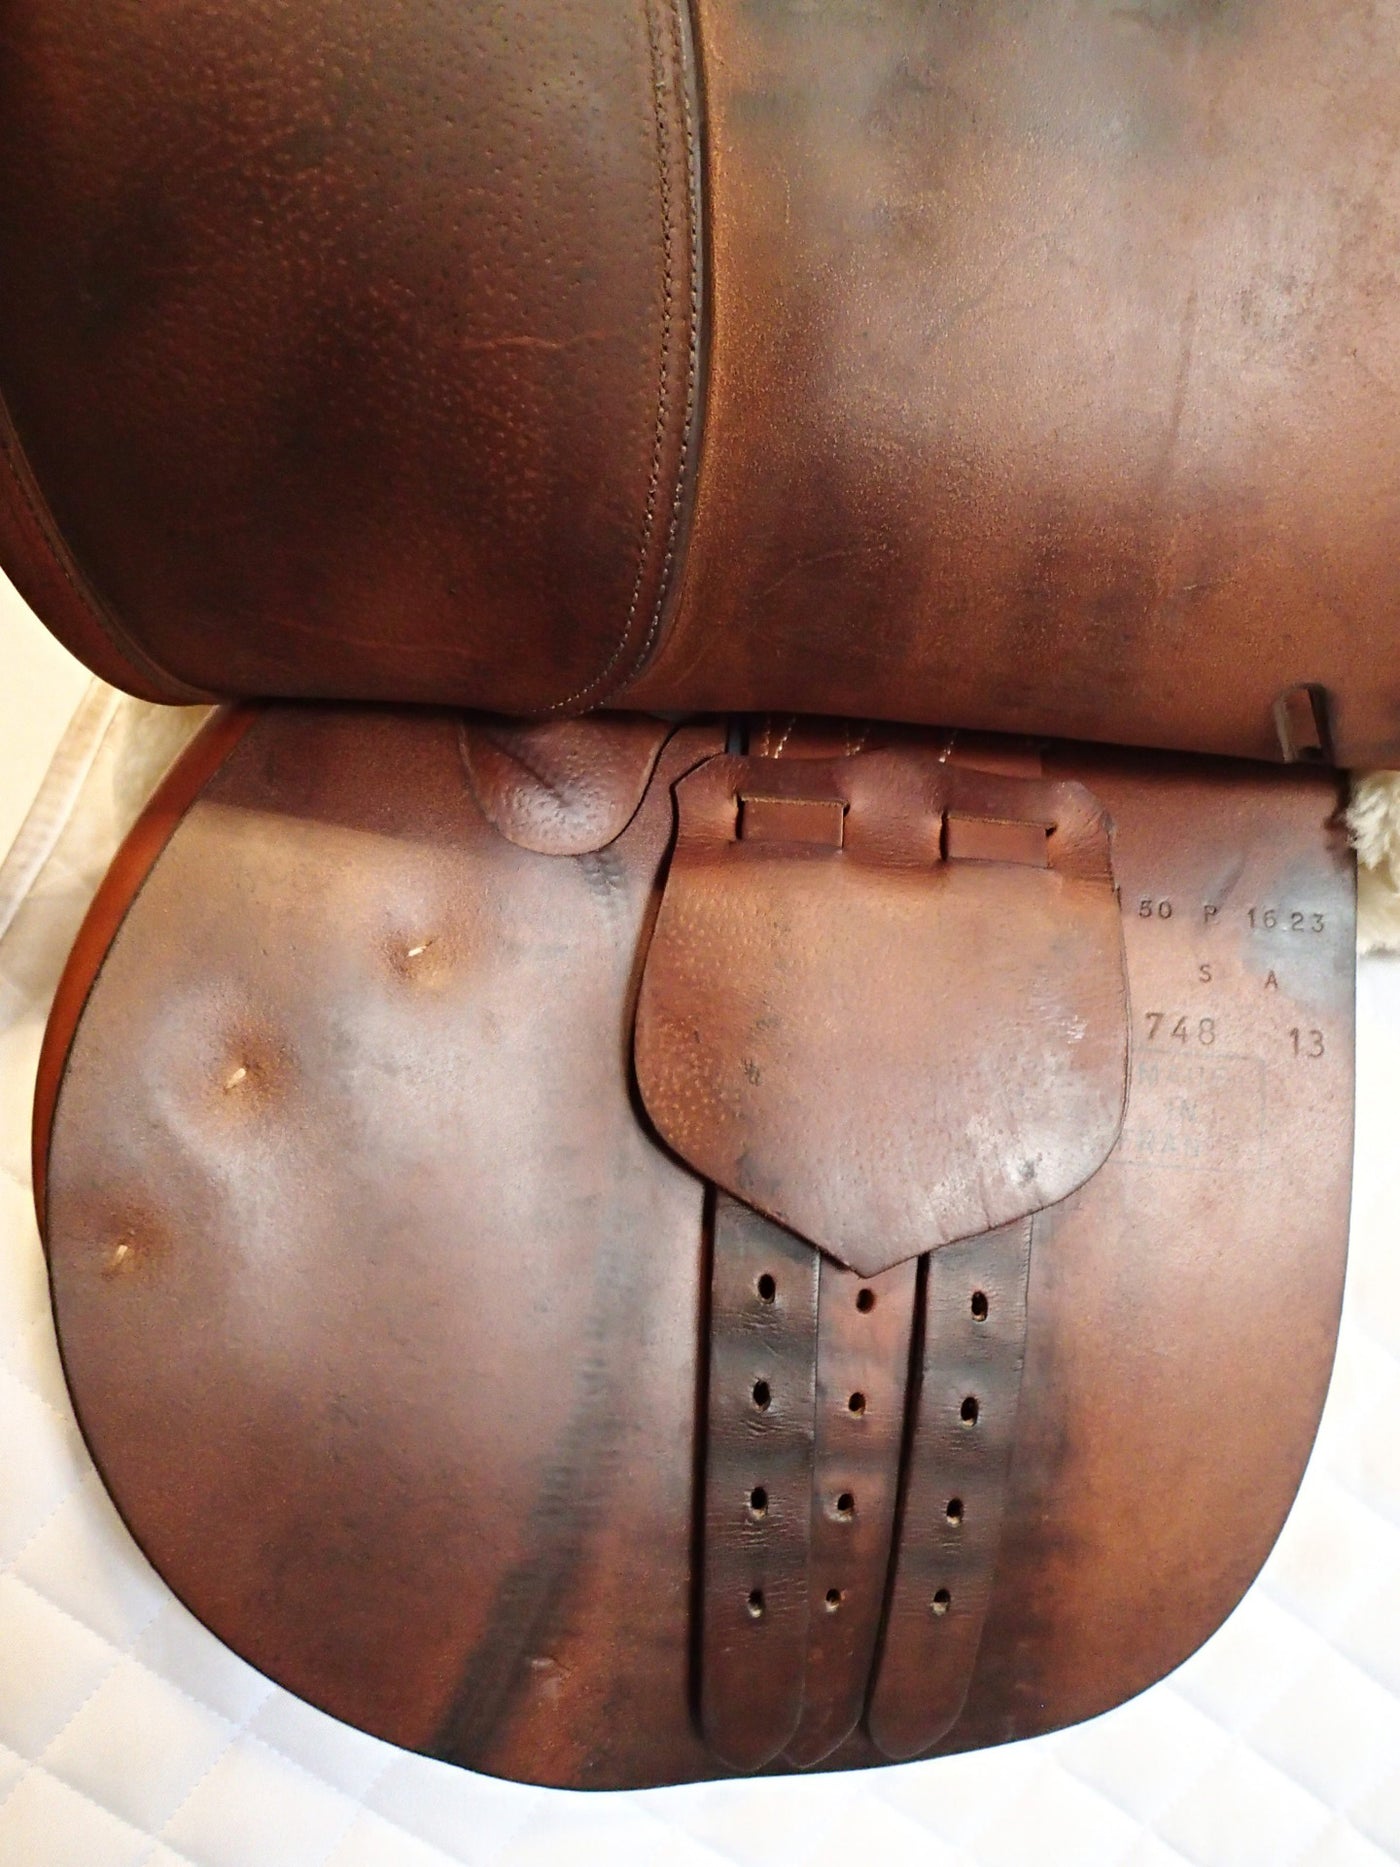 16" Butet Saddle - 2013 - P Seat - 1.5 Flaps - 4.5" dot to dot